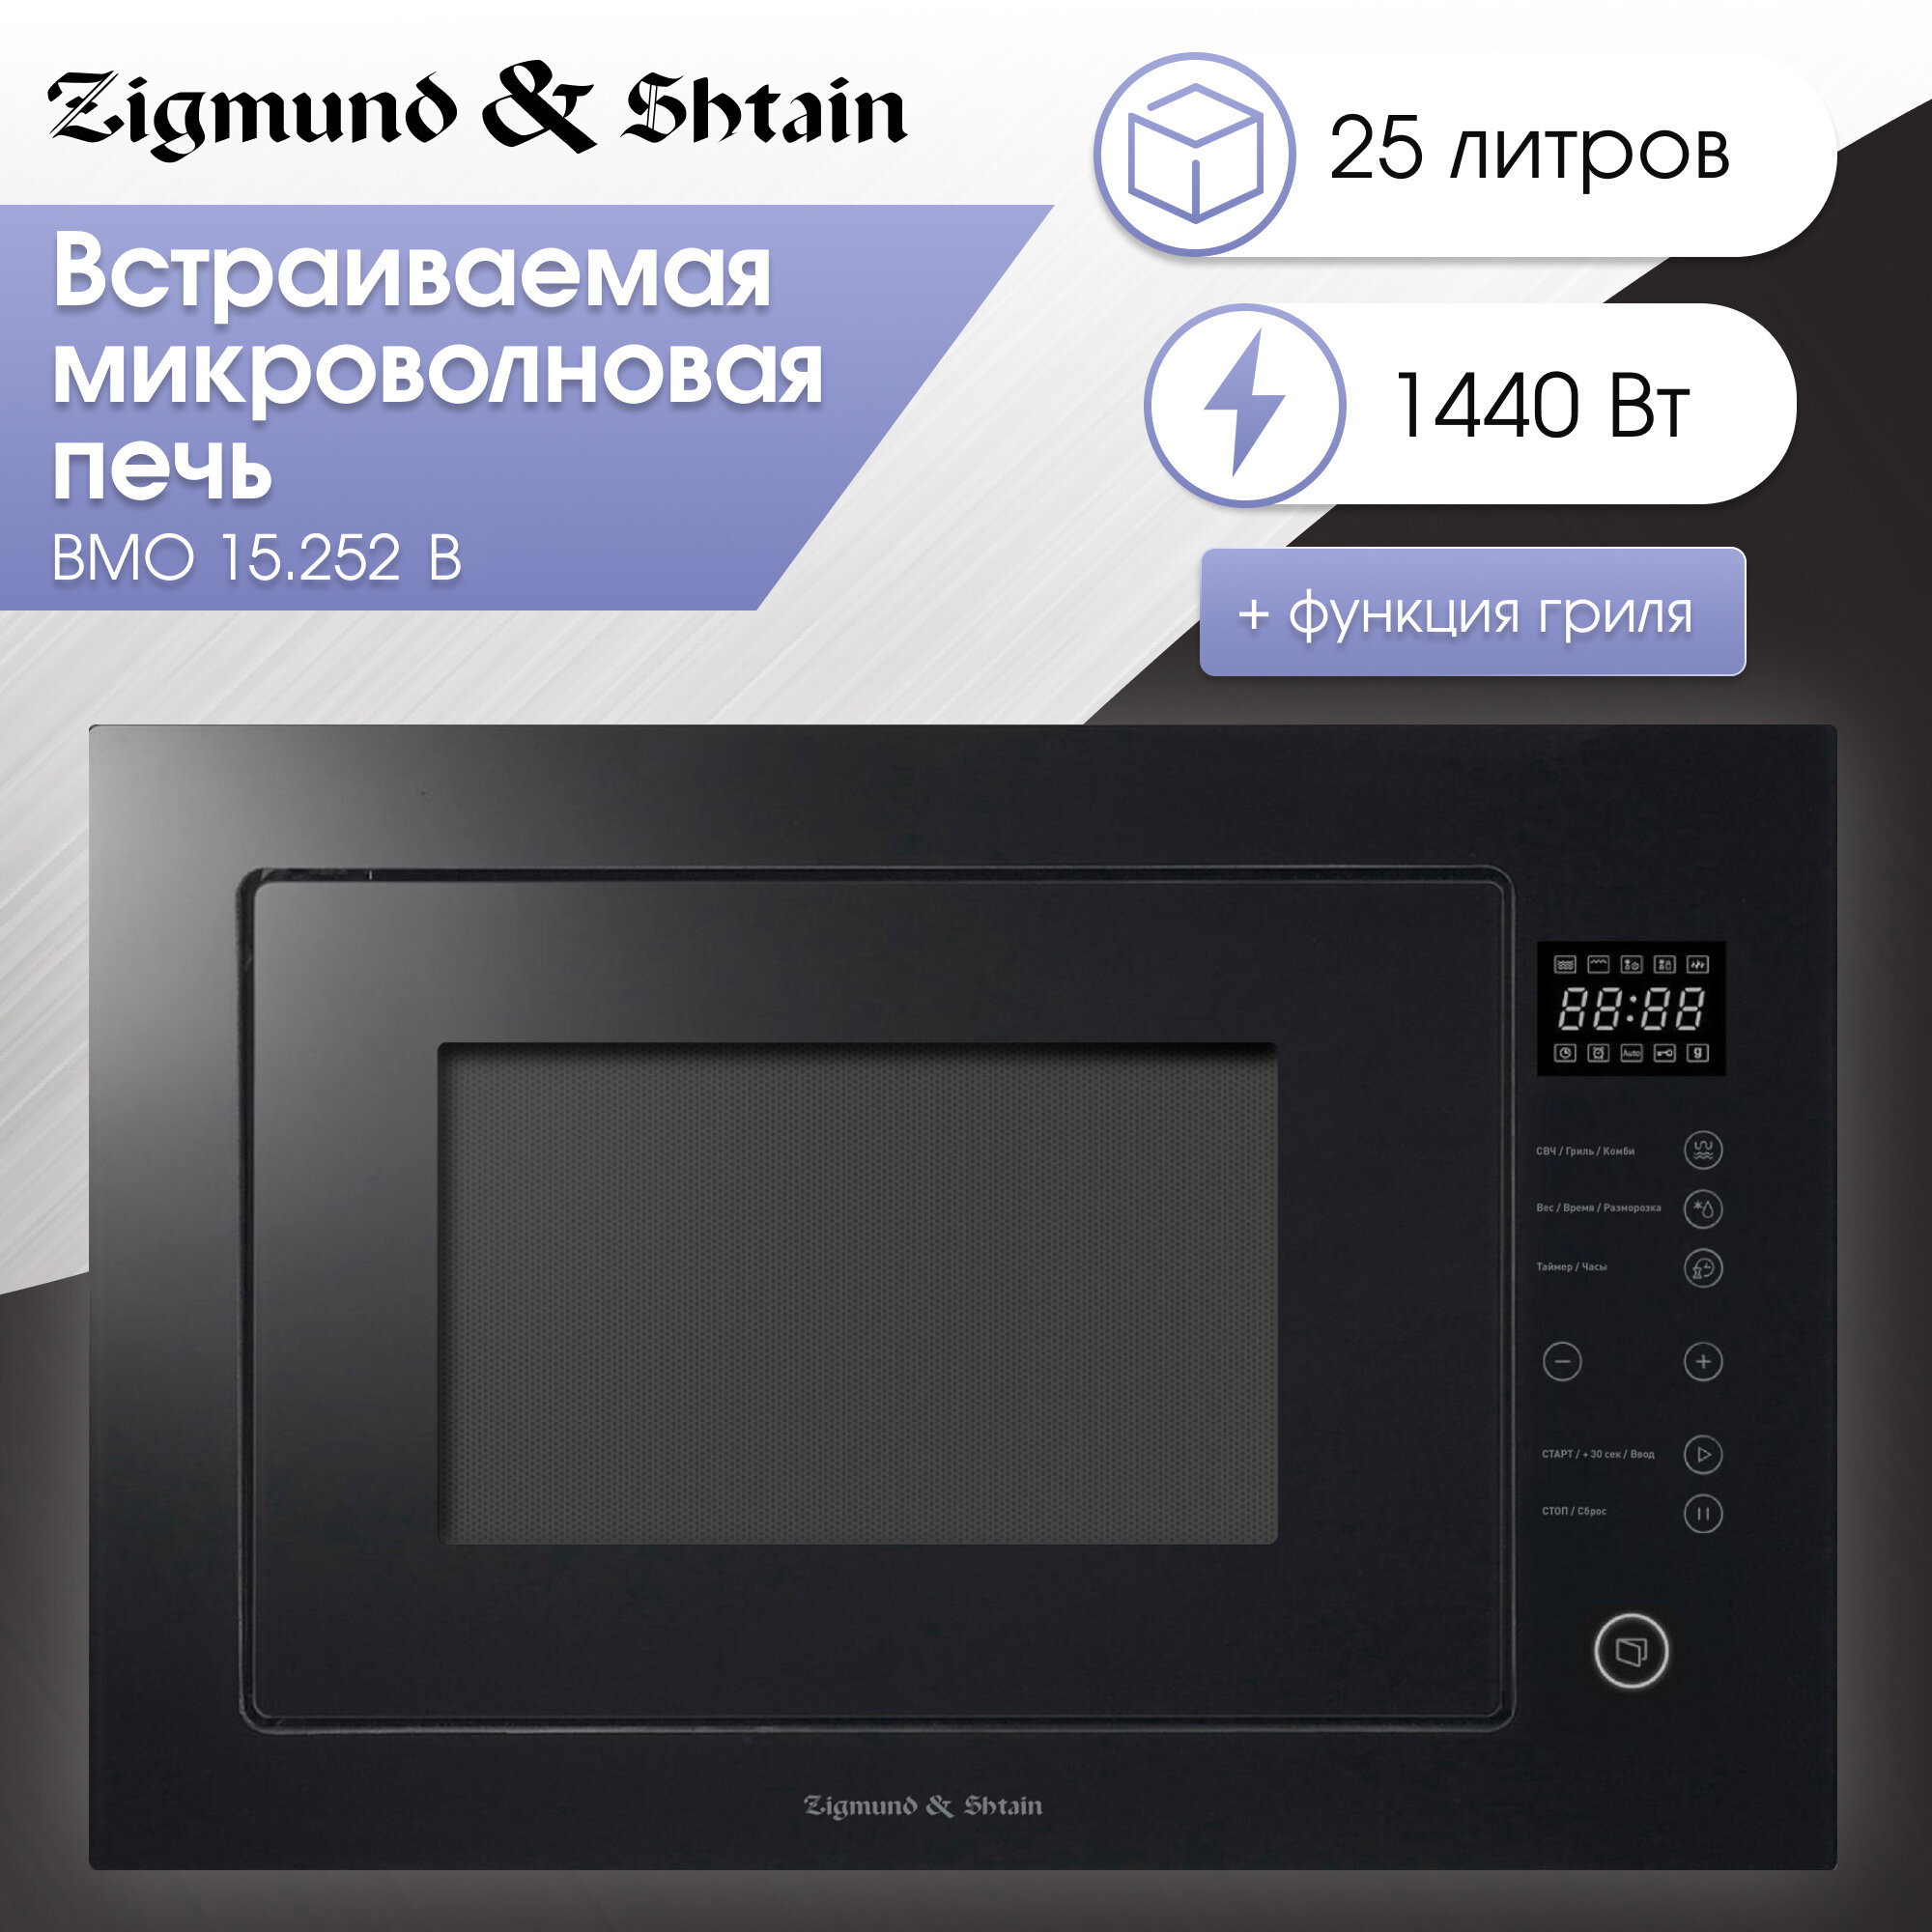 Встраиваемая микроволновая печь Zigmund & Shtain BMO 15.252 B